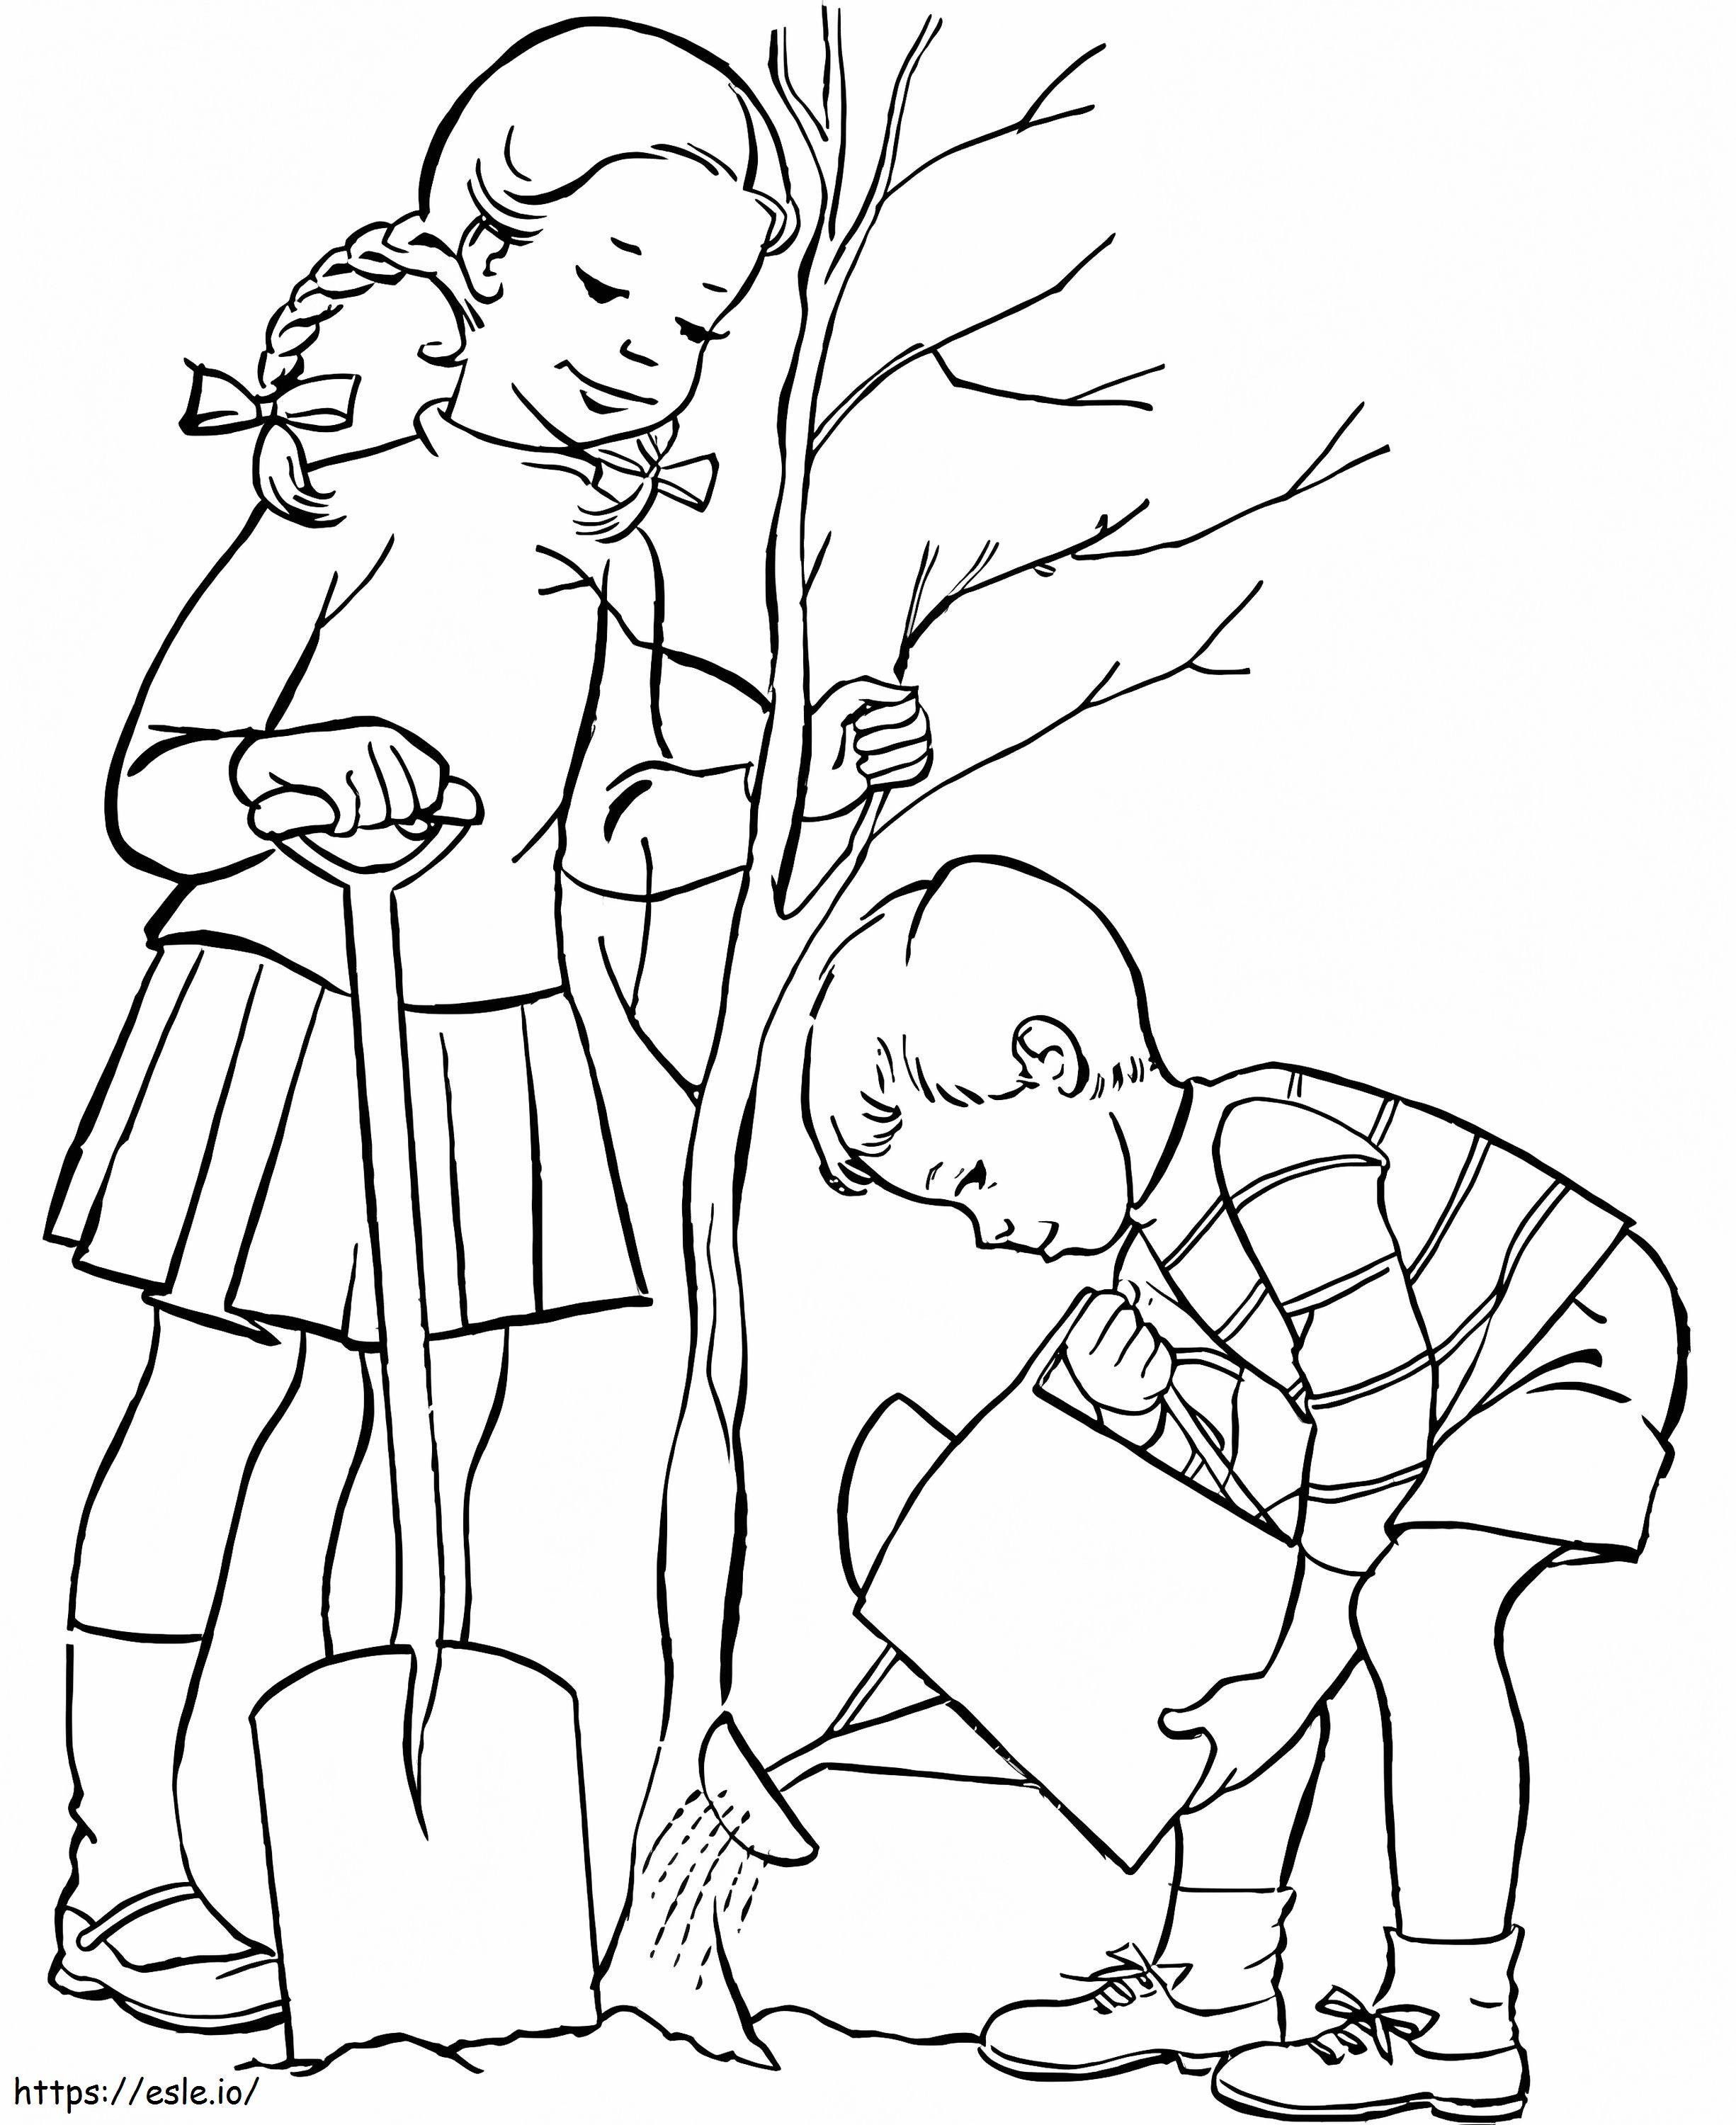 Kinder pflanzen einen Baum ausmalbilder